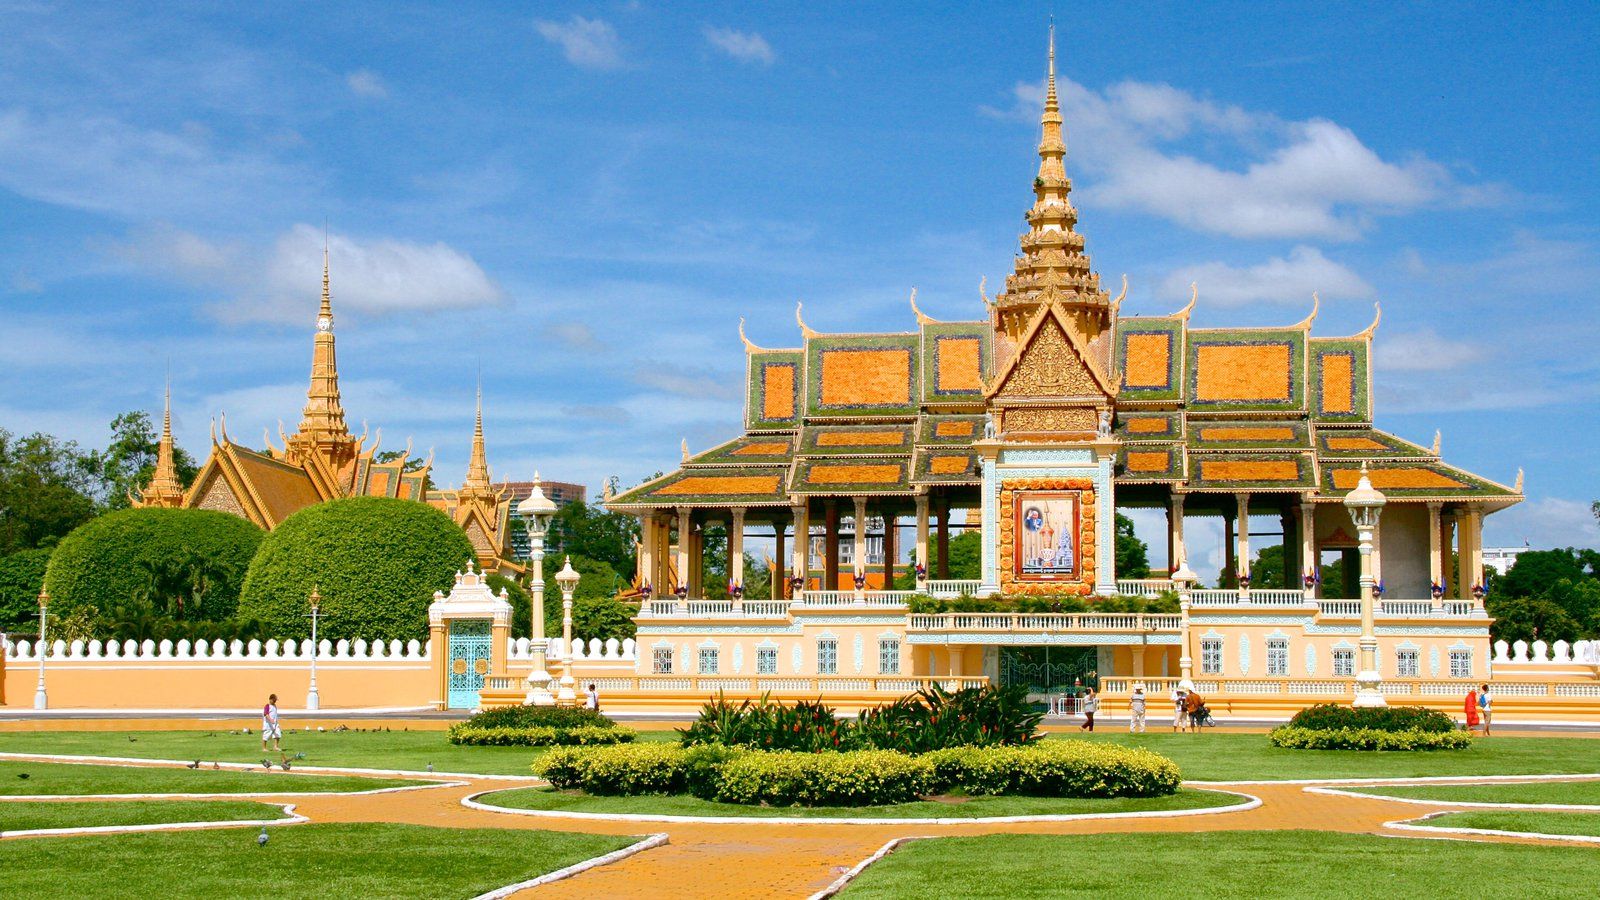 Royal palace and Silver Pagoda